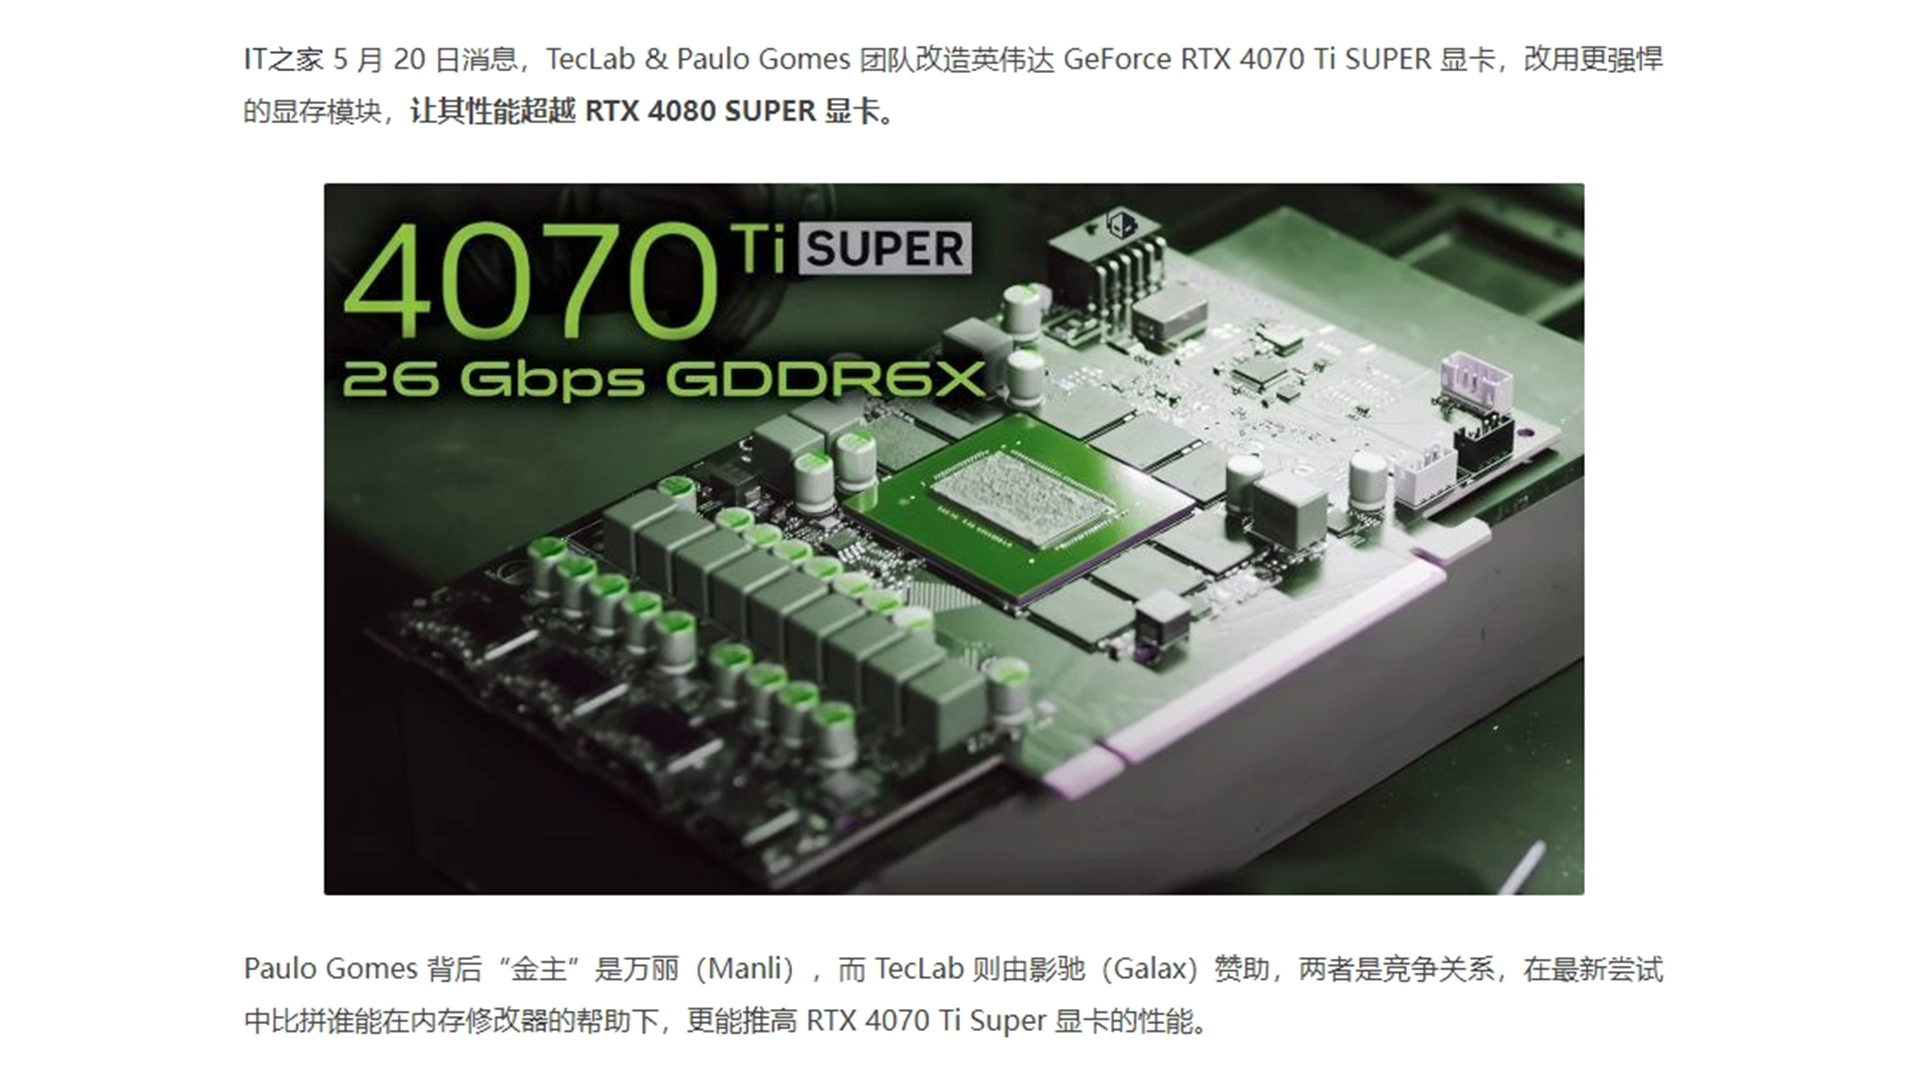 英伟达 RTX 4070 Ti SUPER 被改造上 26 Gbps，性能超 4080 SUPER 显卡